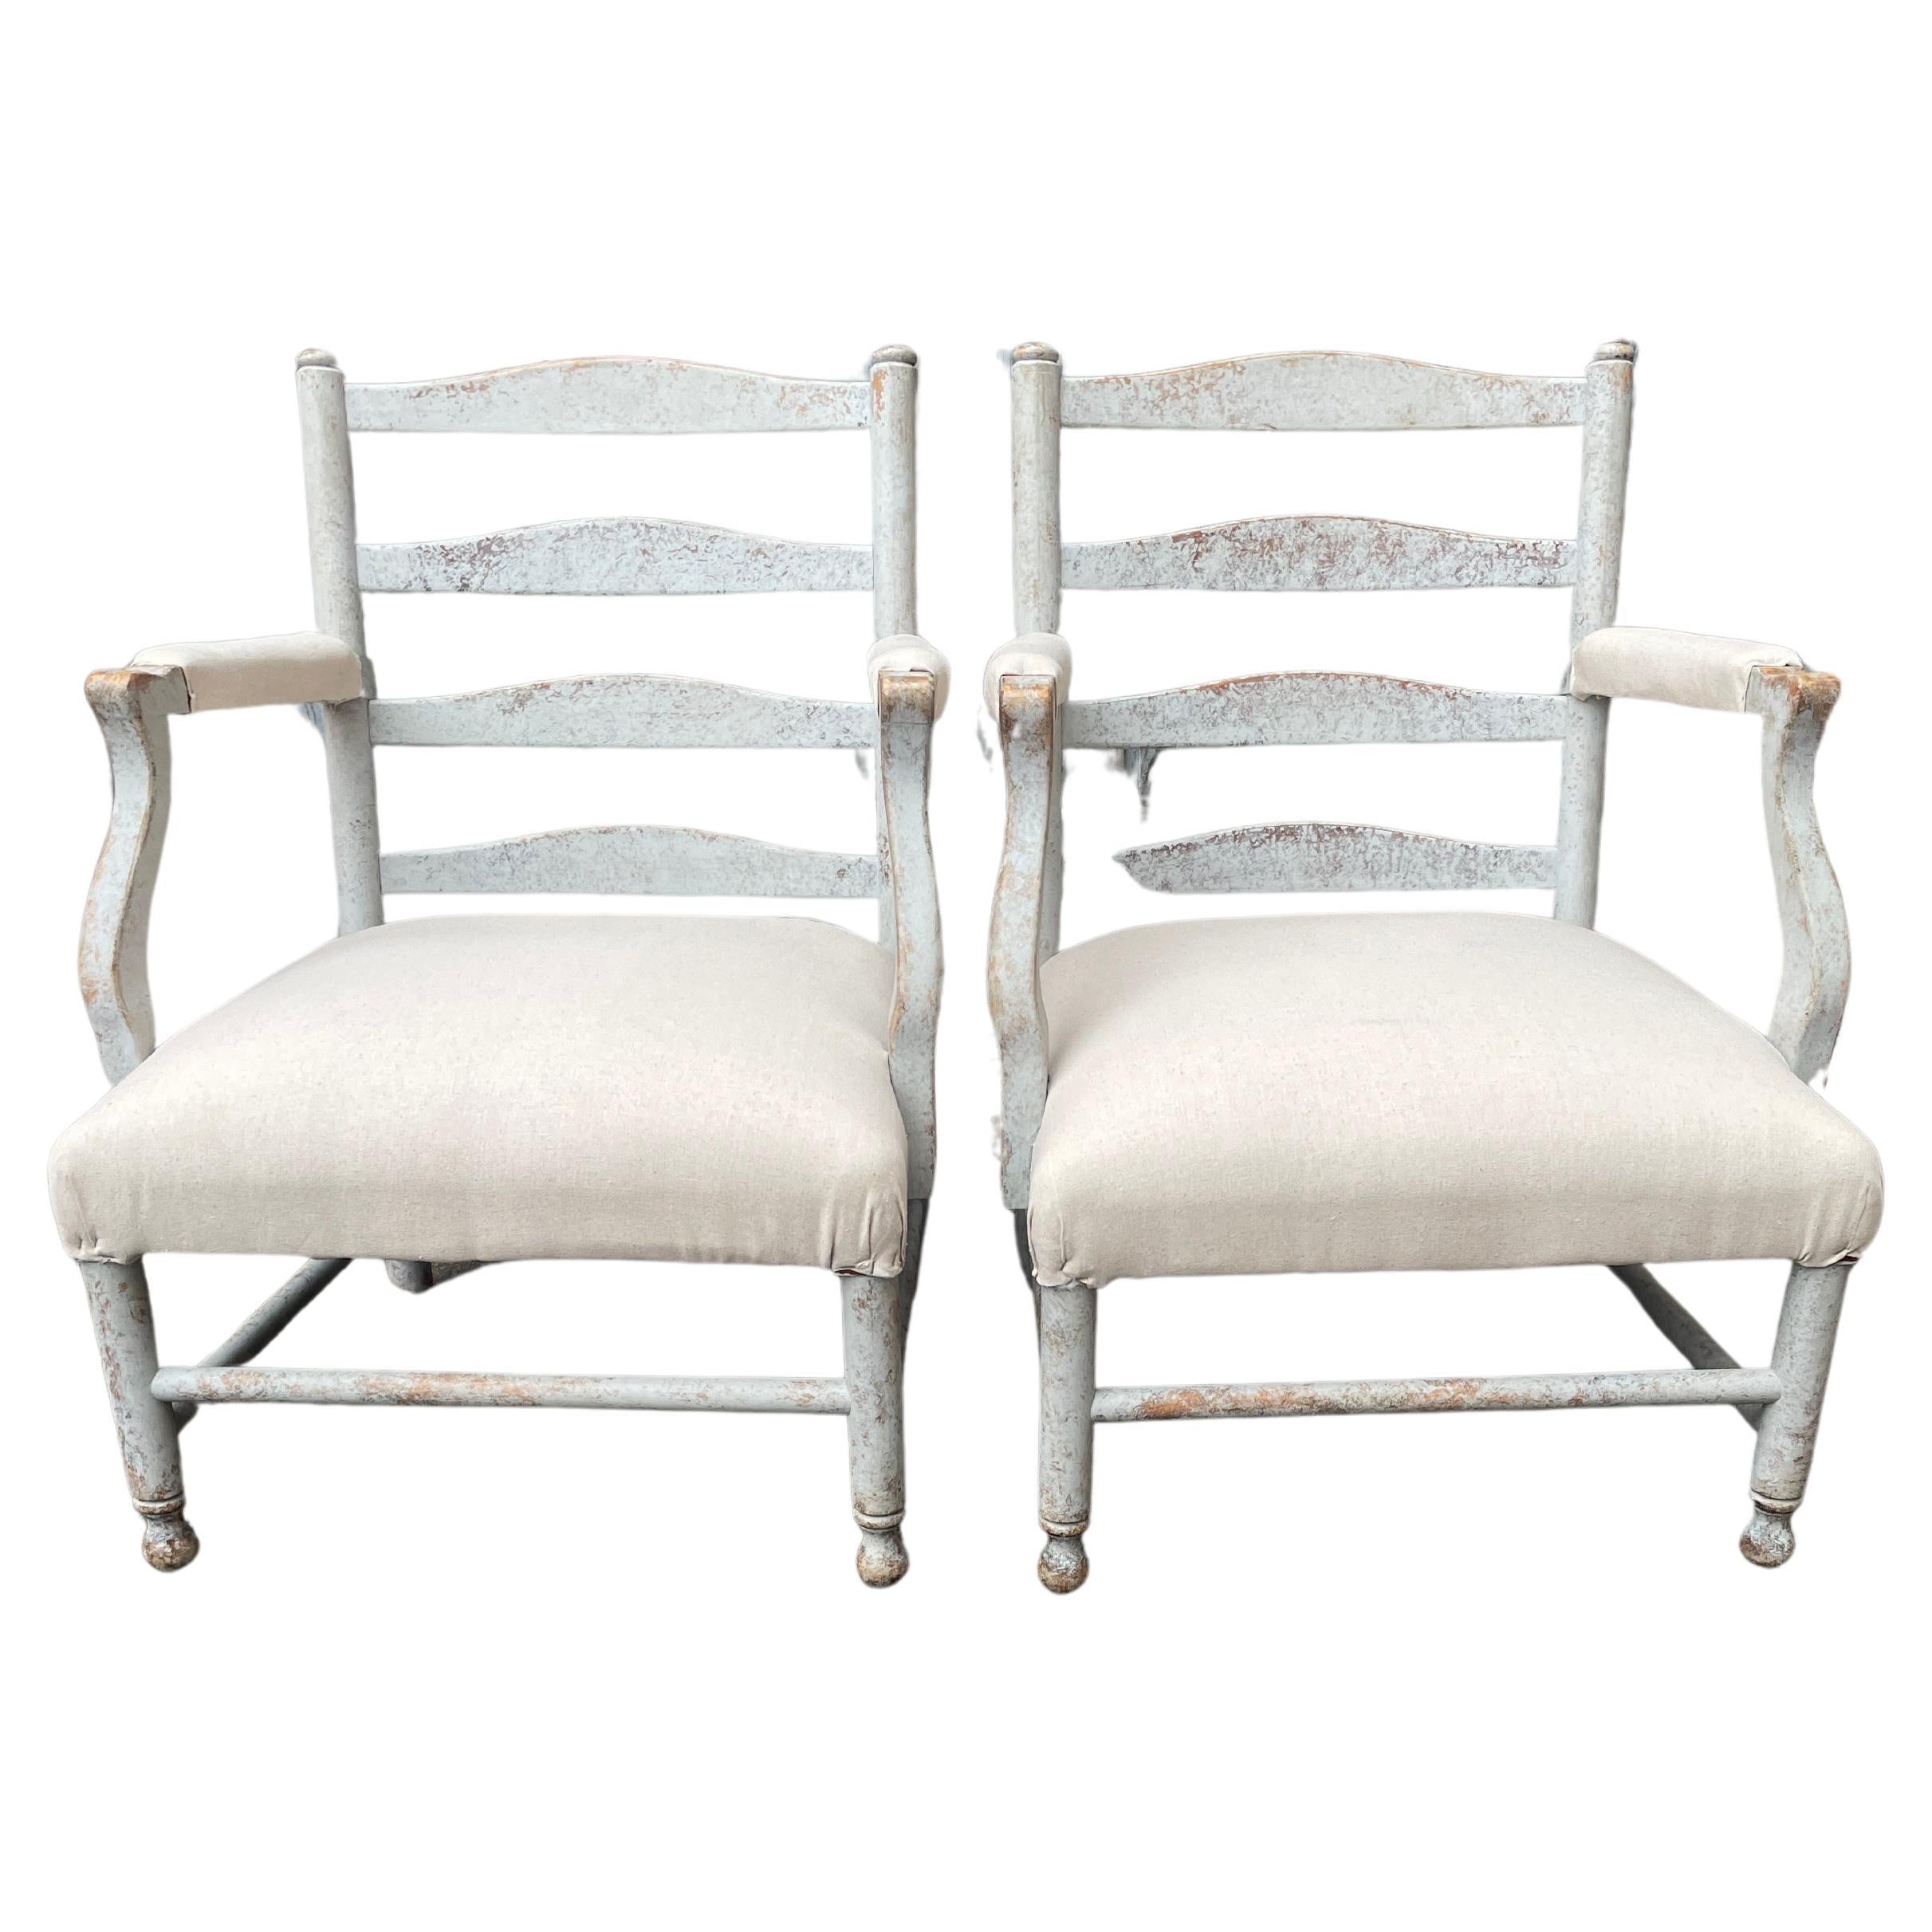 Paire de fauteuils Gripsholm suédois de la fin du XIXe siècle